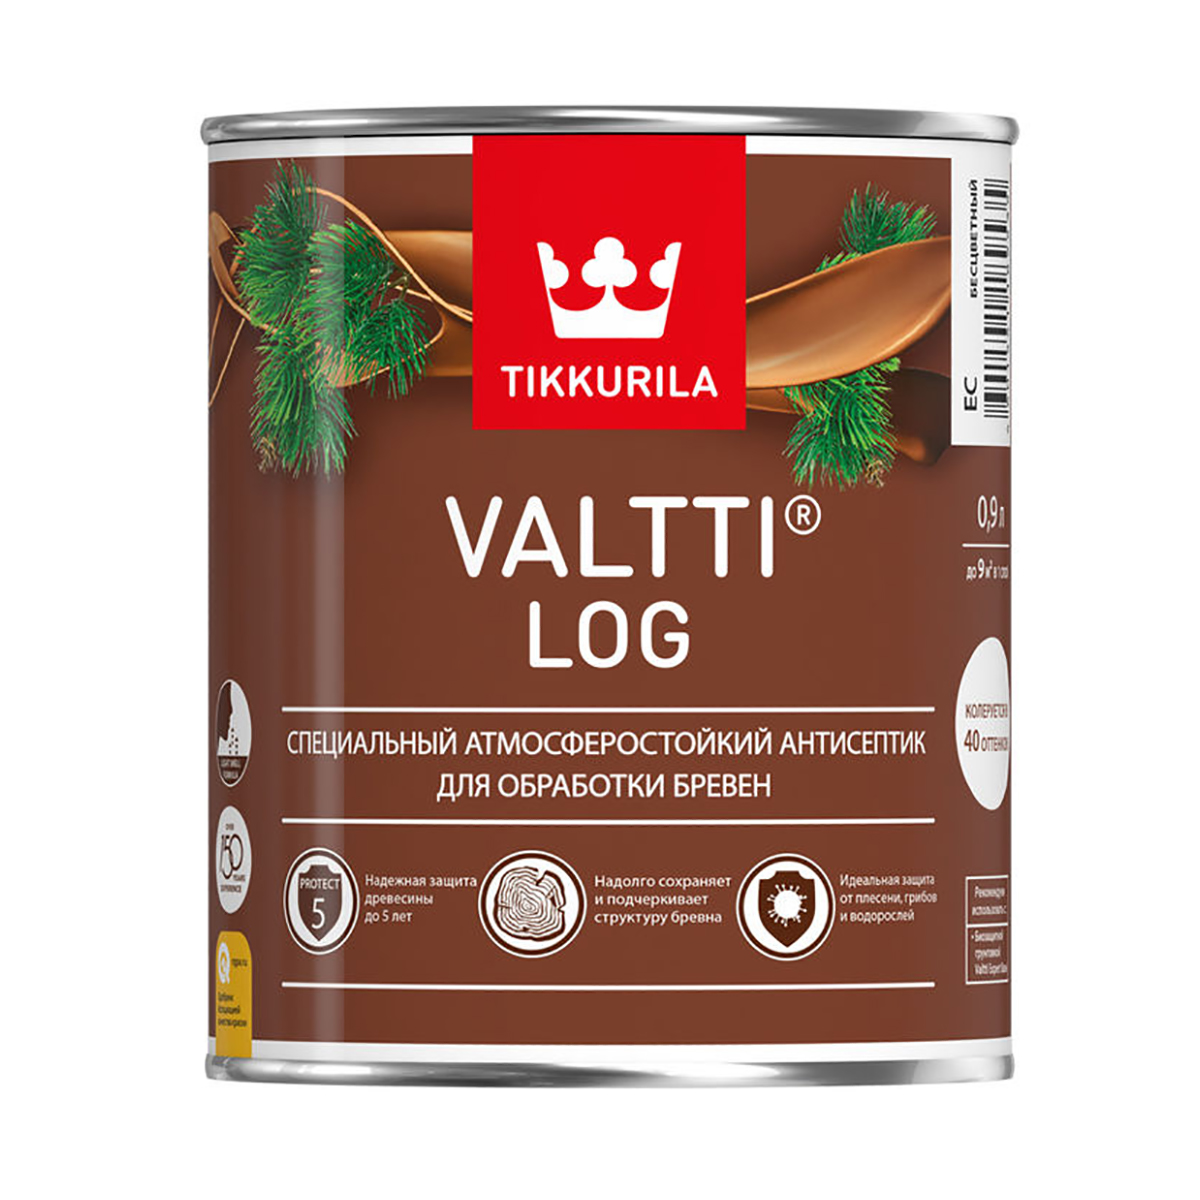 Валтти log  красное дерево  0,9 л   антисептик для дерева TIKKURILA